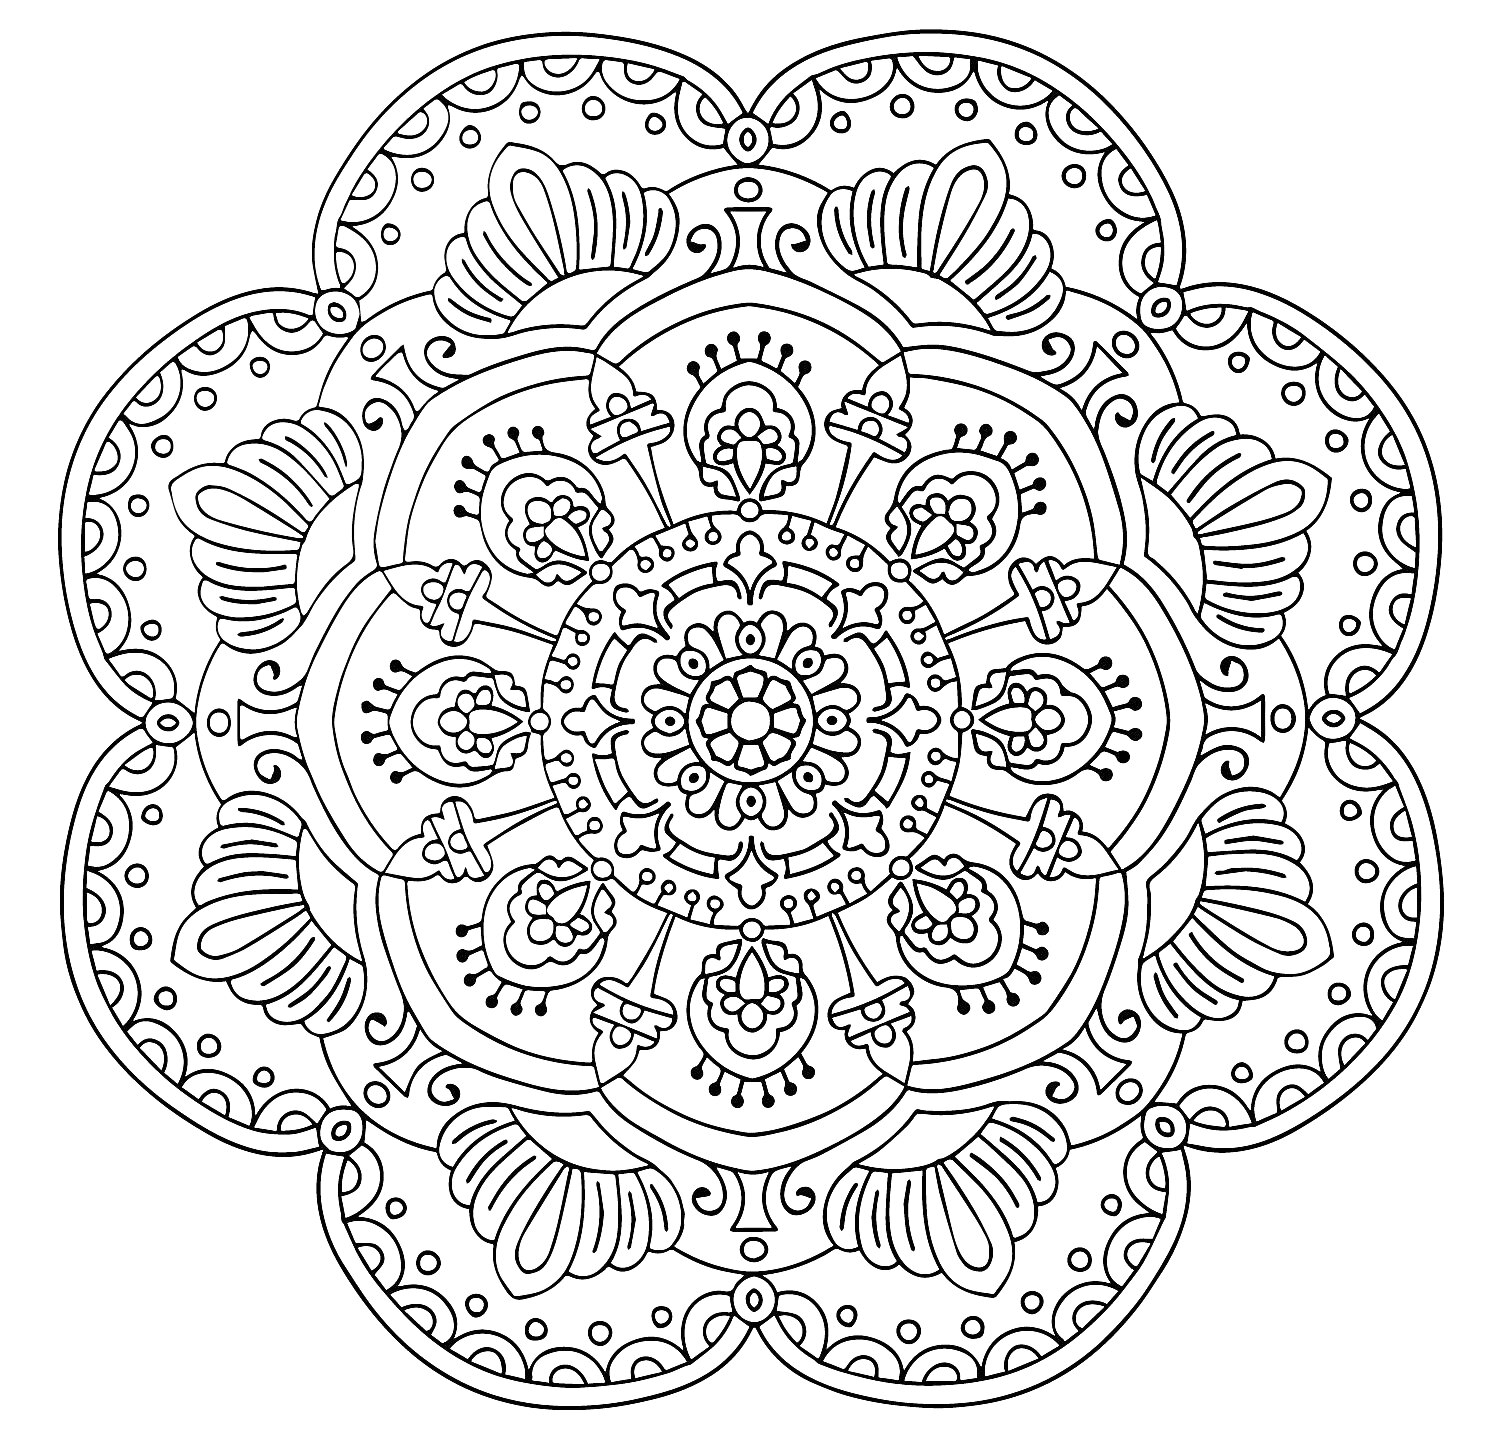 Раскраска Мандала с концентрическими кругами, лепестками и узорами из линий и точек